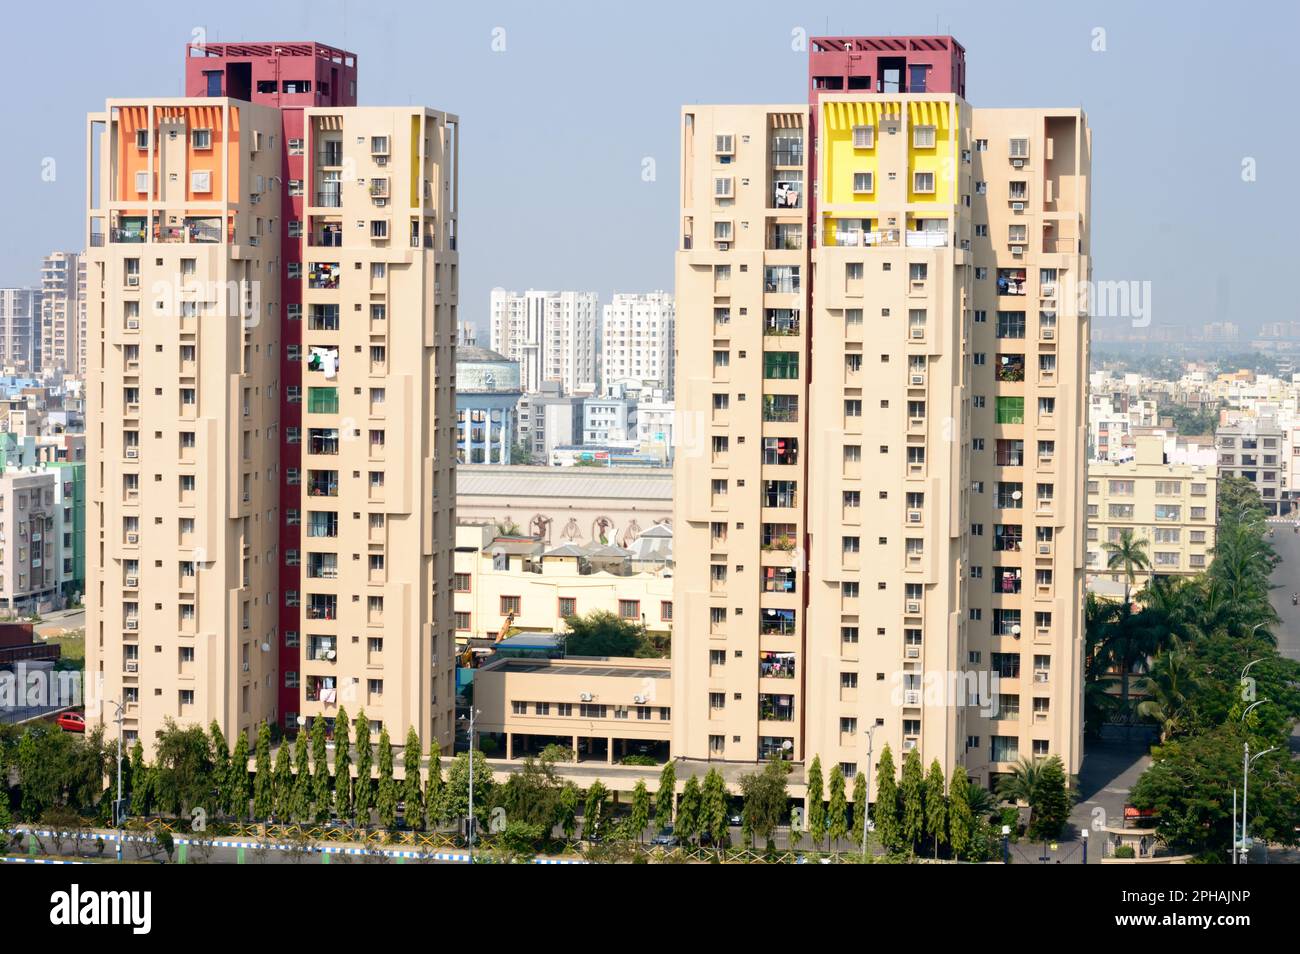 Ein Hochhaus mit zwei Türmen in Newtown Kalkutta. Kalkutta Indien Südasiatisch-Pazifischer Raum 18. Juli 2022 Stockfoto